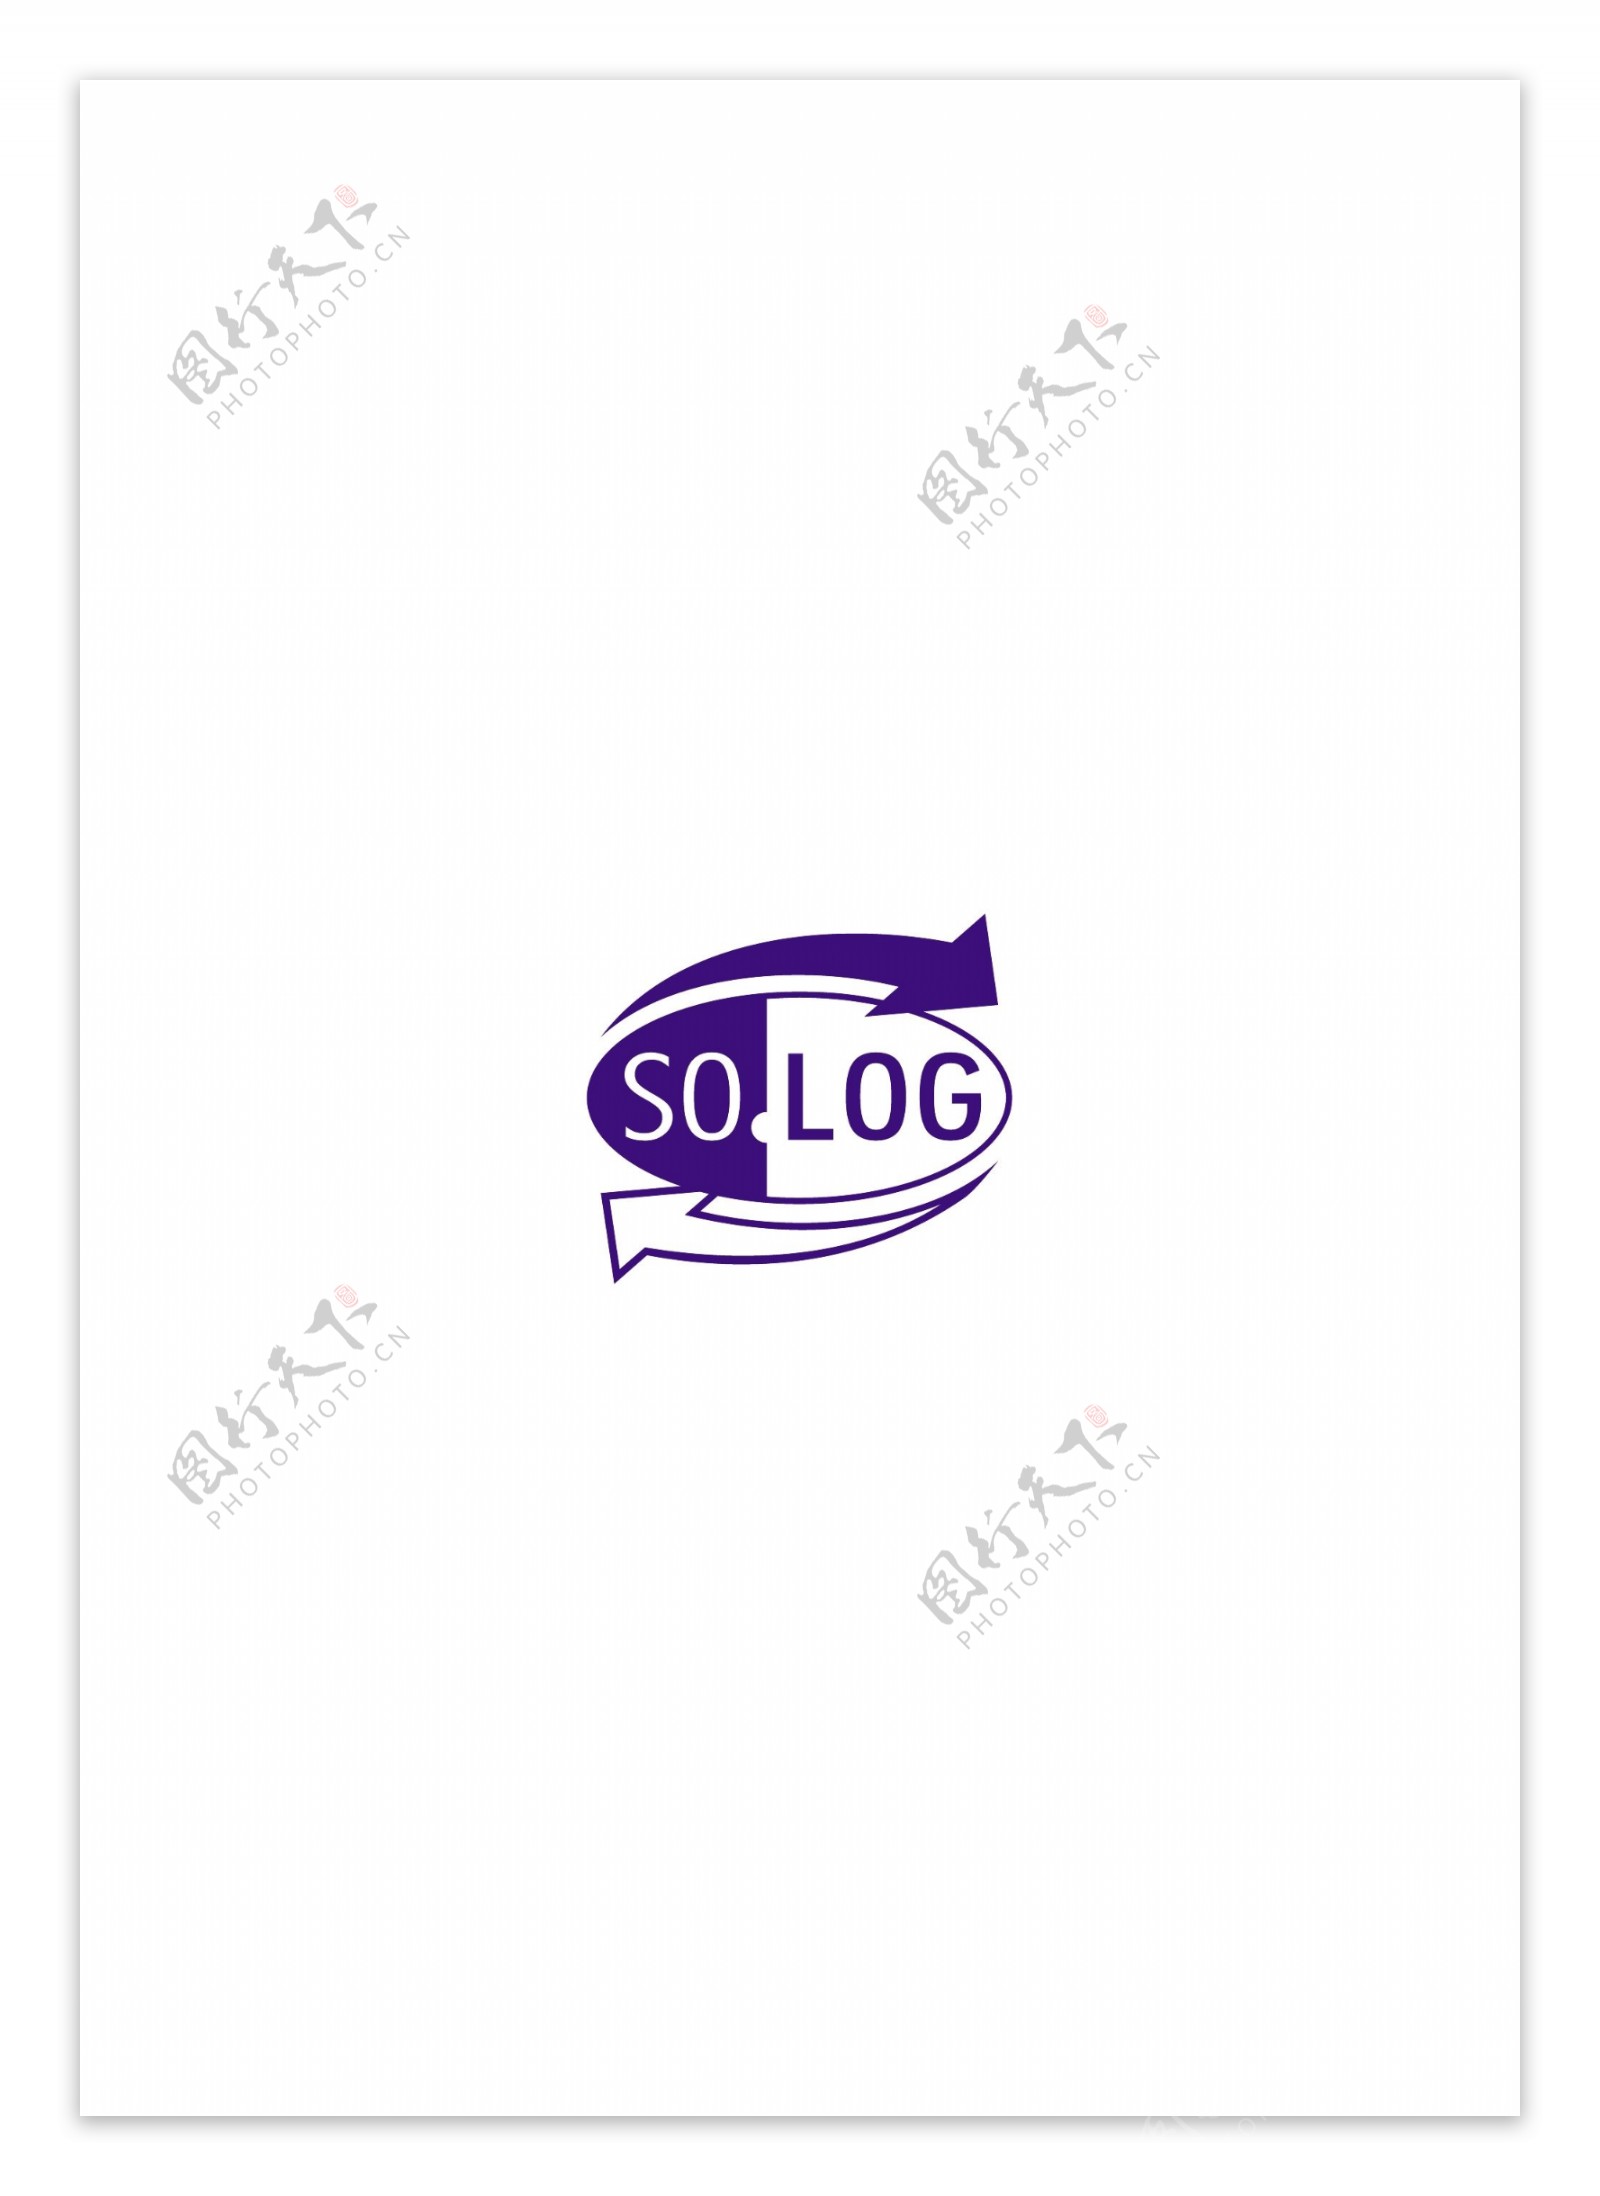 SoLogSrllogo设计欣赏SoLogSrl交通部门标志下载标志设计欣赏